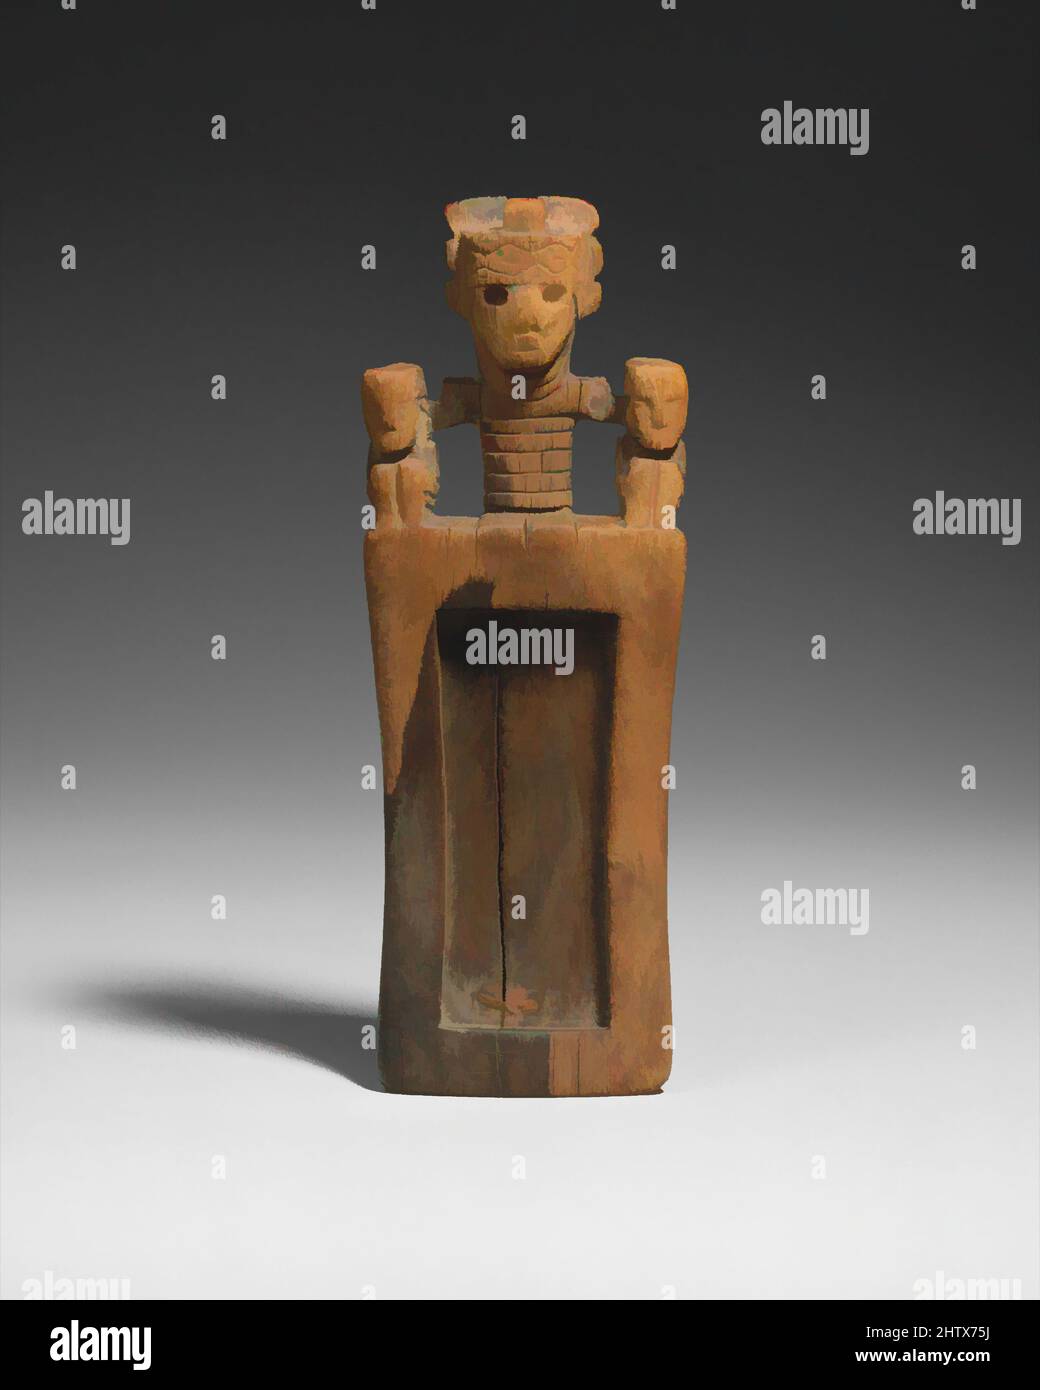 Kunst inspiriert von Snuff Tray, 4.–10. Jahrhundert, Chile oder Peru, Wari, Wood, H. 3 3/8 x B 5 1/8 Zoll (8,6 x 13 cm), Holzbehälter, Snuff durch Röhrchen aus kleinen Tabletts oder Tabletten wie dieser inhaliert, war eine weit verbreitete Praxis in präkolumbianischem Südamerika. In der San Pedro de Atacama, Klassischen Werke modernisiert von Artotop mit einem Schuss Moderne. Formen, Farbe und Wert, auffällige visuelle Wirkung auf Kunst. Emotionen durch Freiheit von Kunstwerken auf zeitgemäße Weise. Eine zeitlose Botschaft, die eine wild kreative neue Richtung verfolgt. Künstler, die sich dem digitalen Medium zuwenden und die Artotop NFT erschaffen Stockfoto